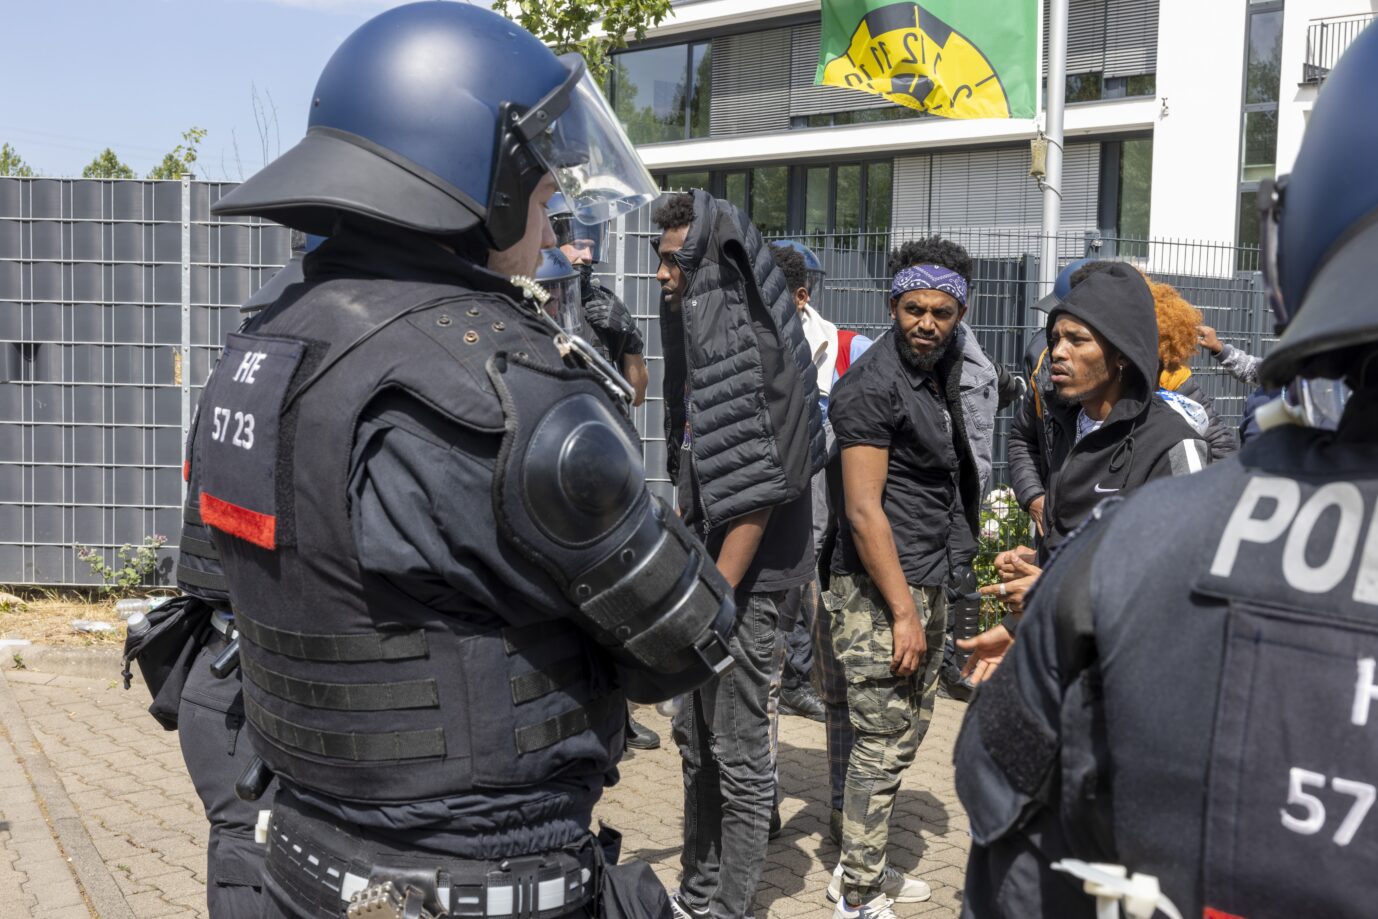 Polizisten haben vor Beginn des Eritrea-Festivals in Gießen eine Gruppe von Menschen umringt. Im Zusammenhang mit dem umstrittenen Eritrea-Festival in Gießen hat die Polizei am Samstag Schlagstöcke und Pfefferspray eingesetzt. Mehrere Menschen hätten versucht, eine Polizeikette zu durchbrechen, teilten die Beamten auf Twitter mit.